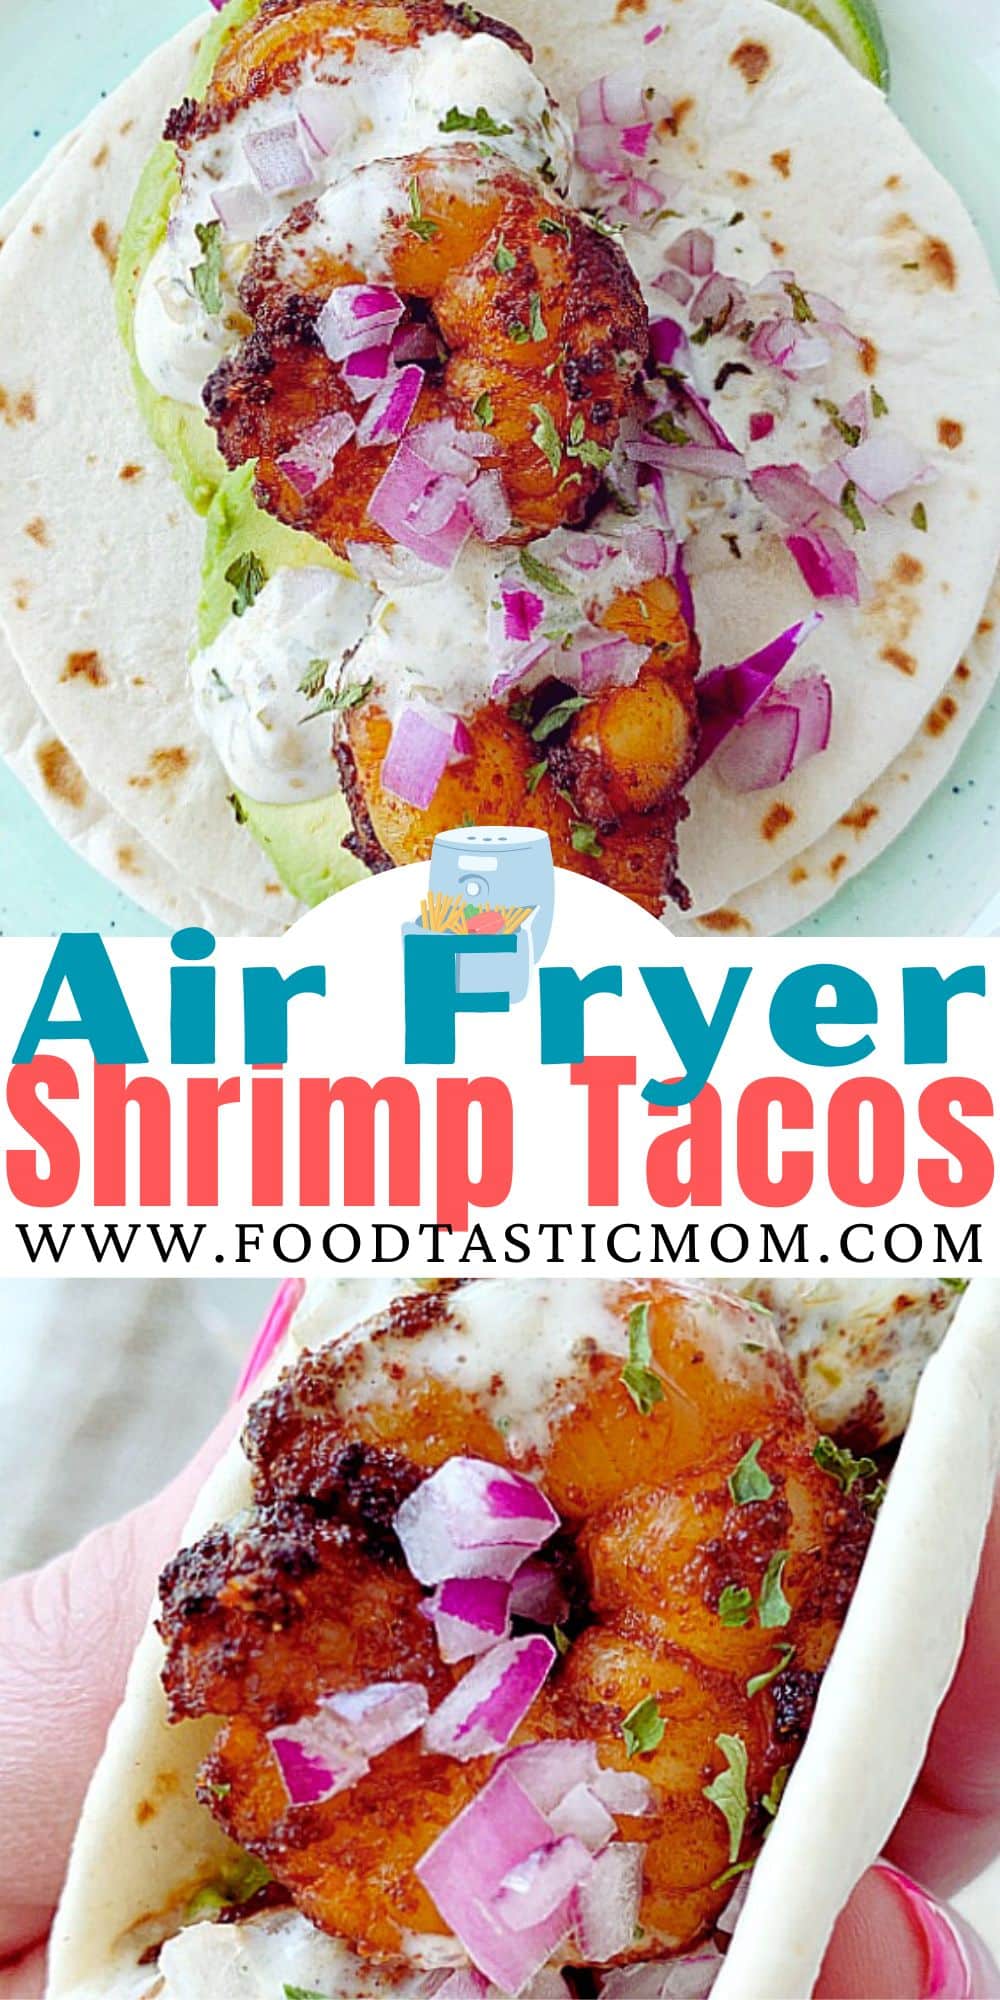 Air Fryer Shrimp Tacos | Foodtastic Mom #shrimptacos #airfryer #airfryerrecipes #tacorecipes #airfryershrimptacos #airfryertacos via @foodtasticmom